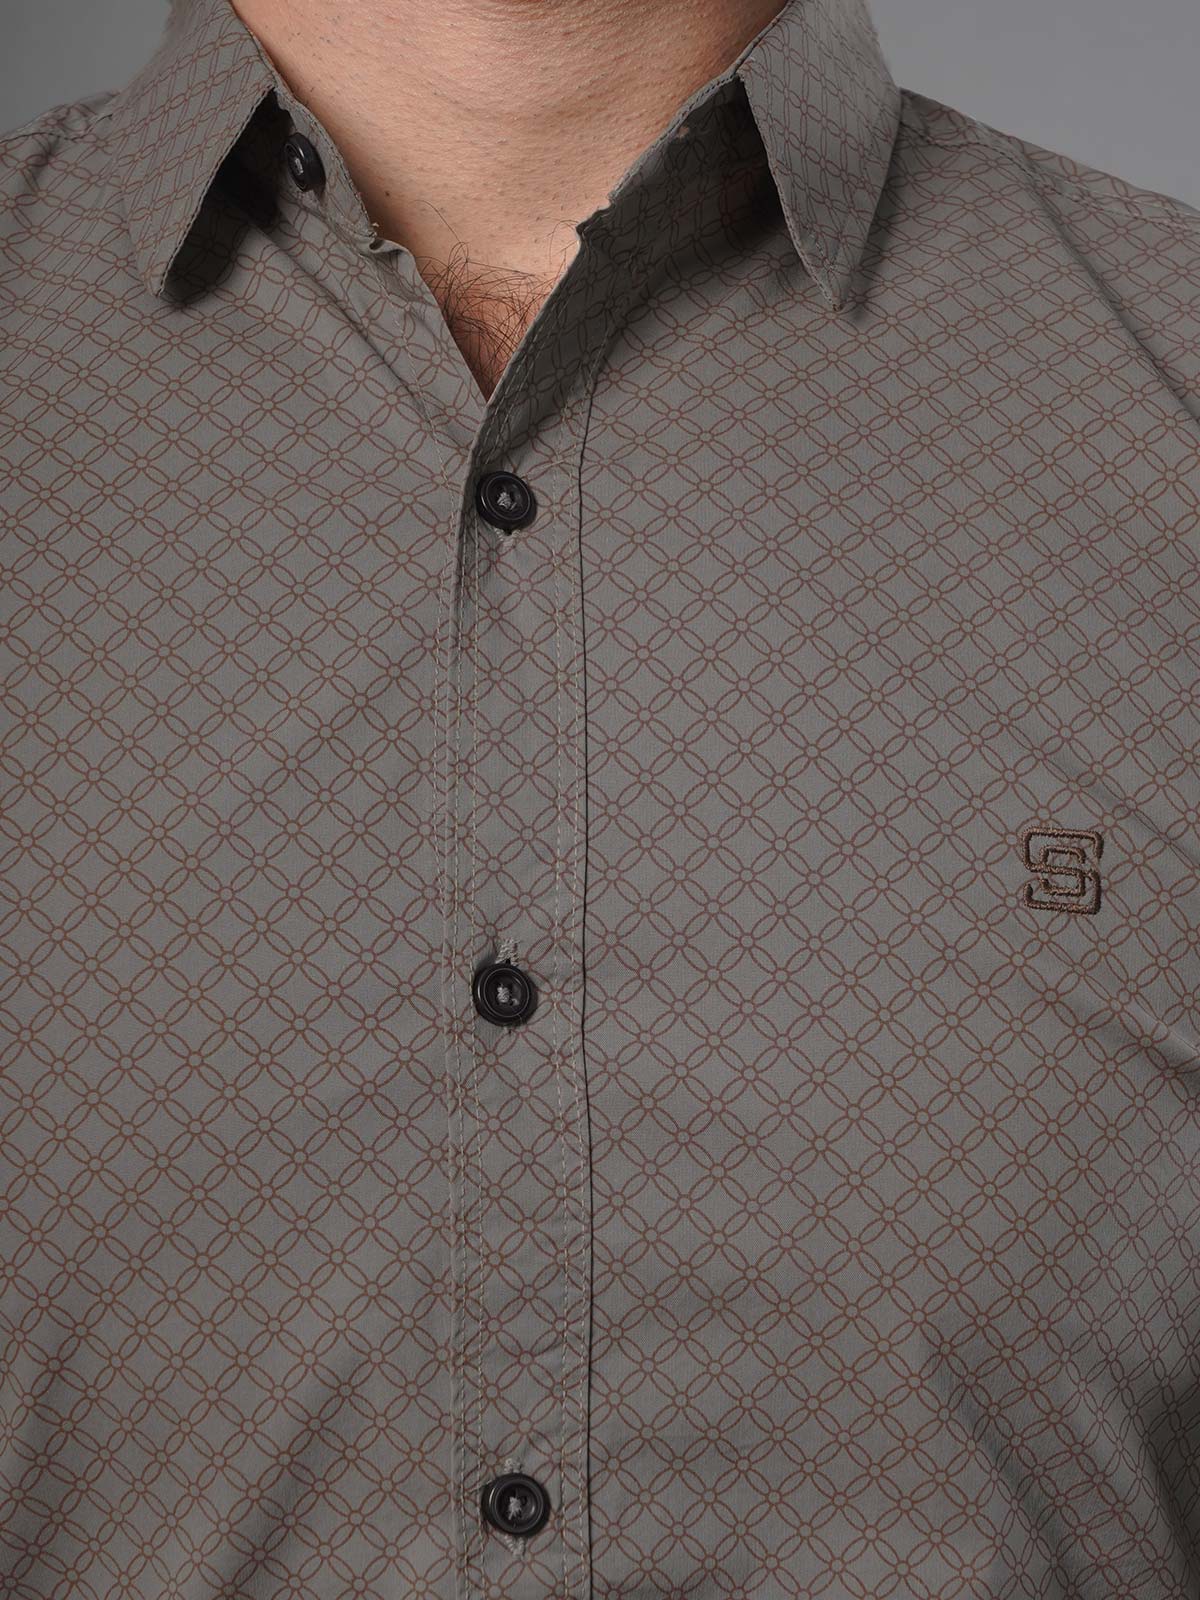 Brown Printed Casual Shirt (CSP-142)